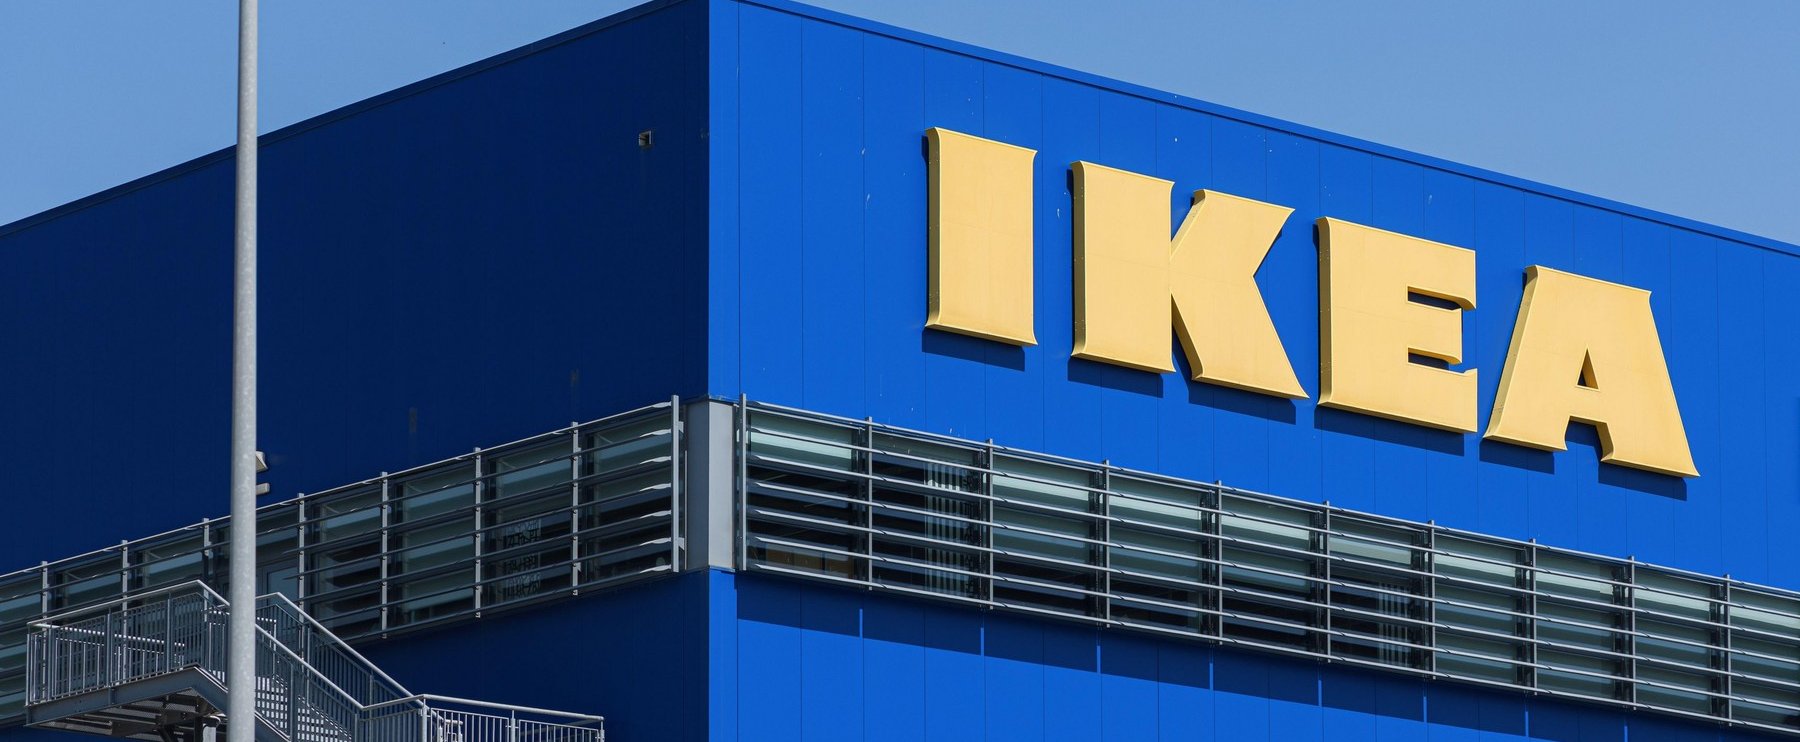 Döntött a hazai IKEA, hatalmas lehetőség előtt a családok